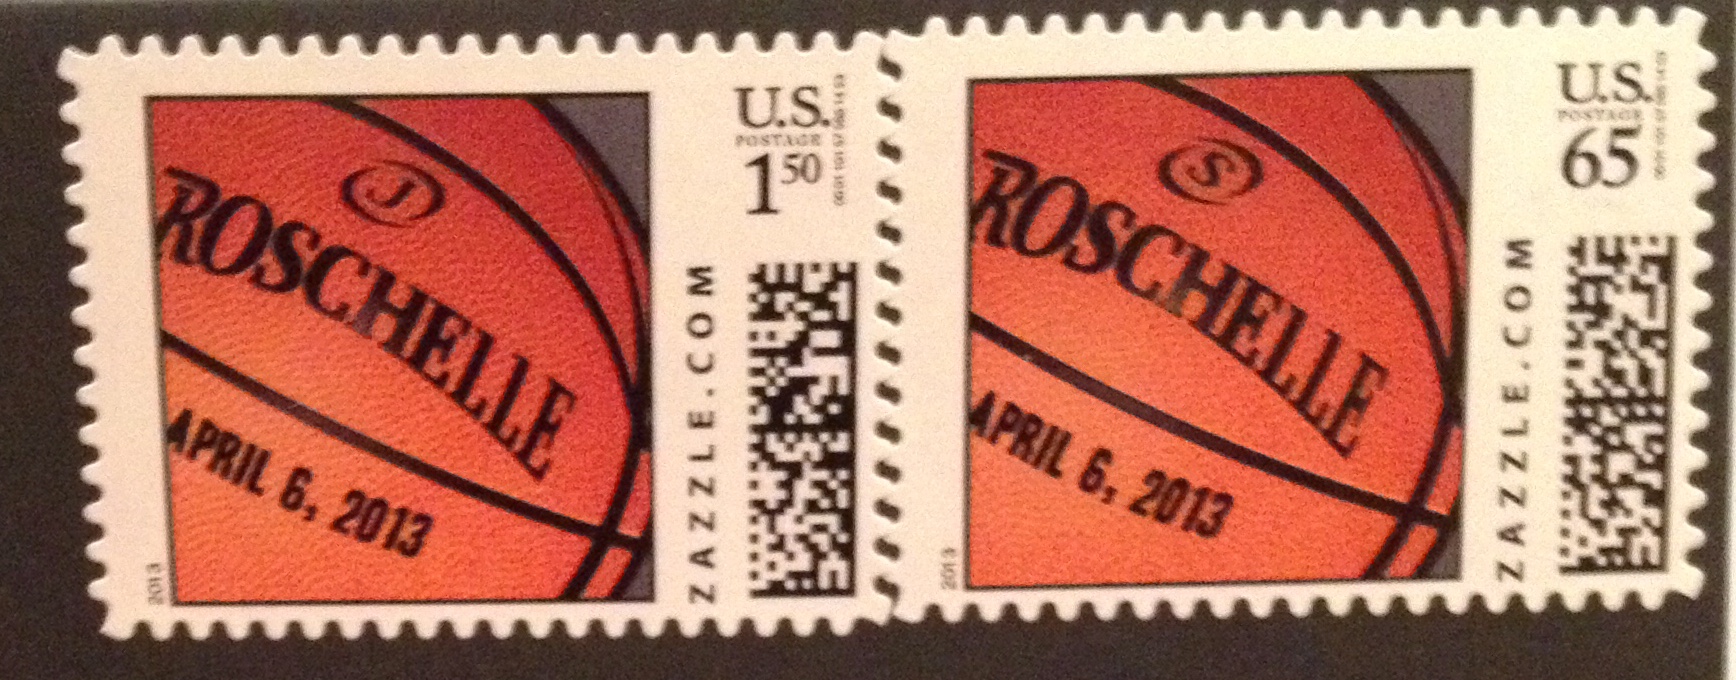 basketball stamps